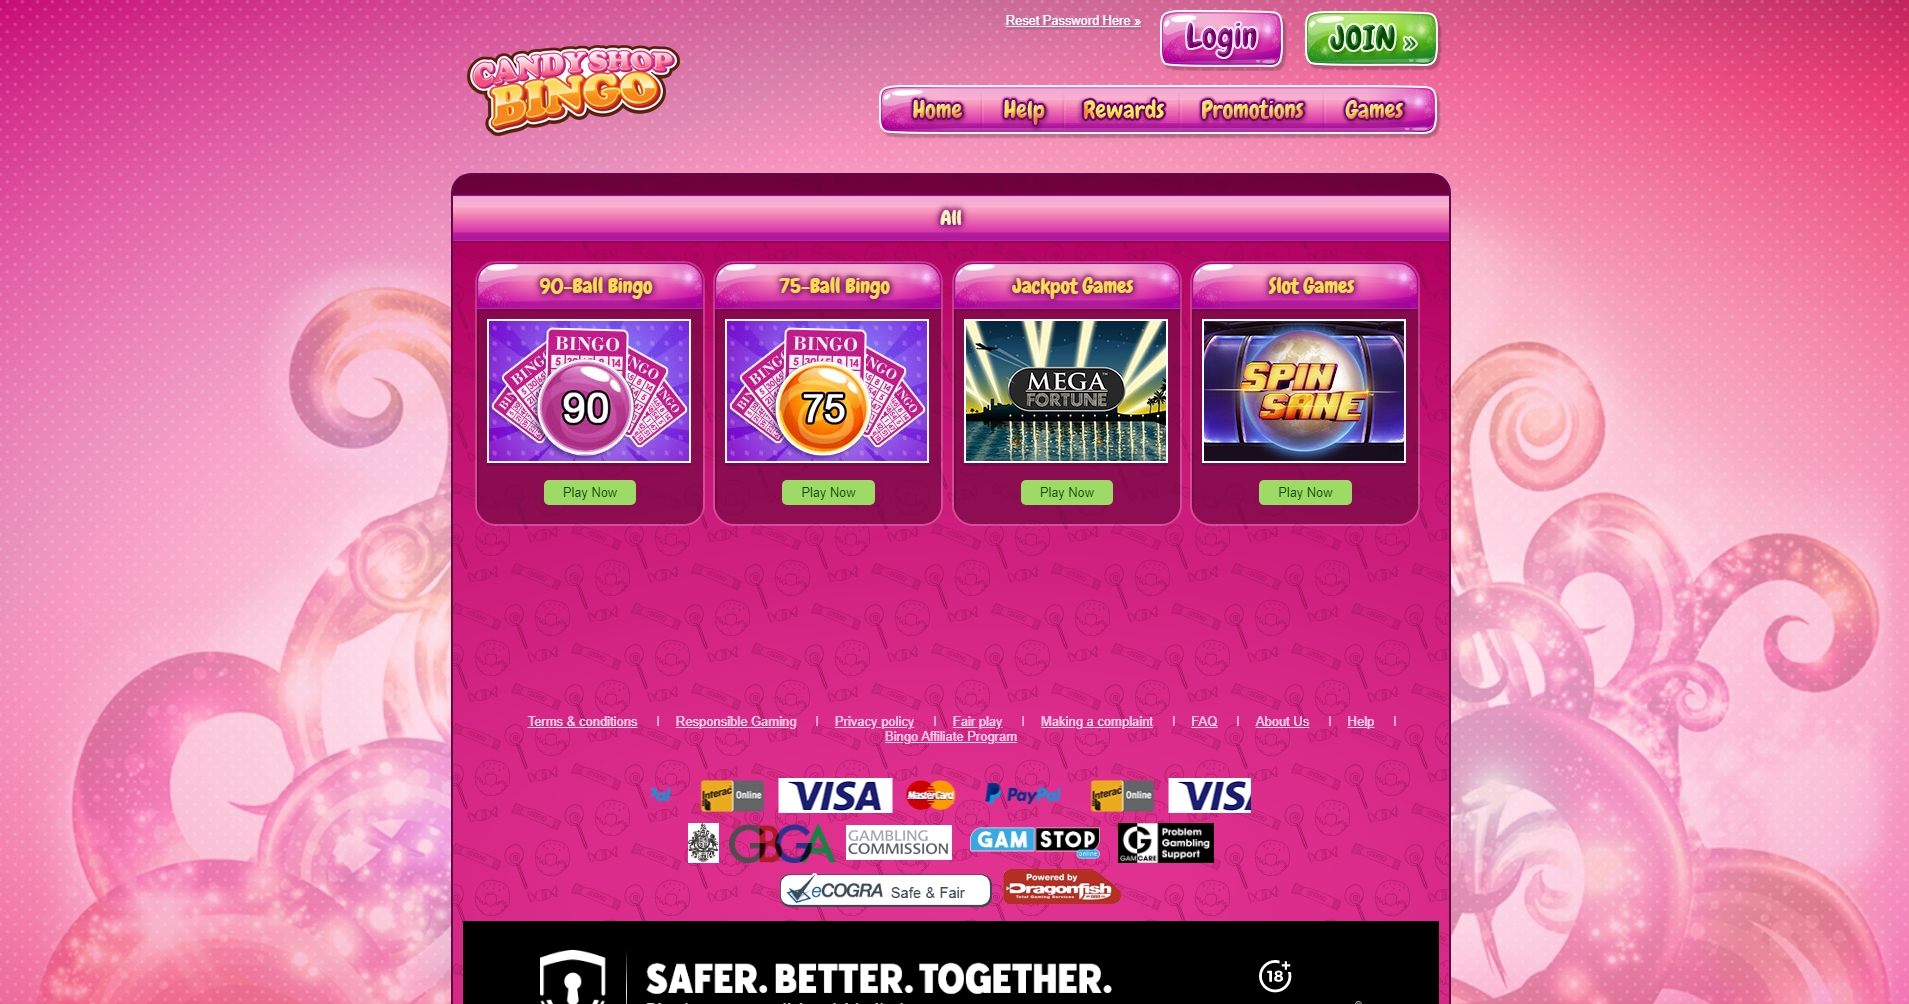 Candy Shop Bingo Casino Games